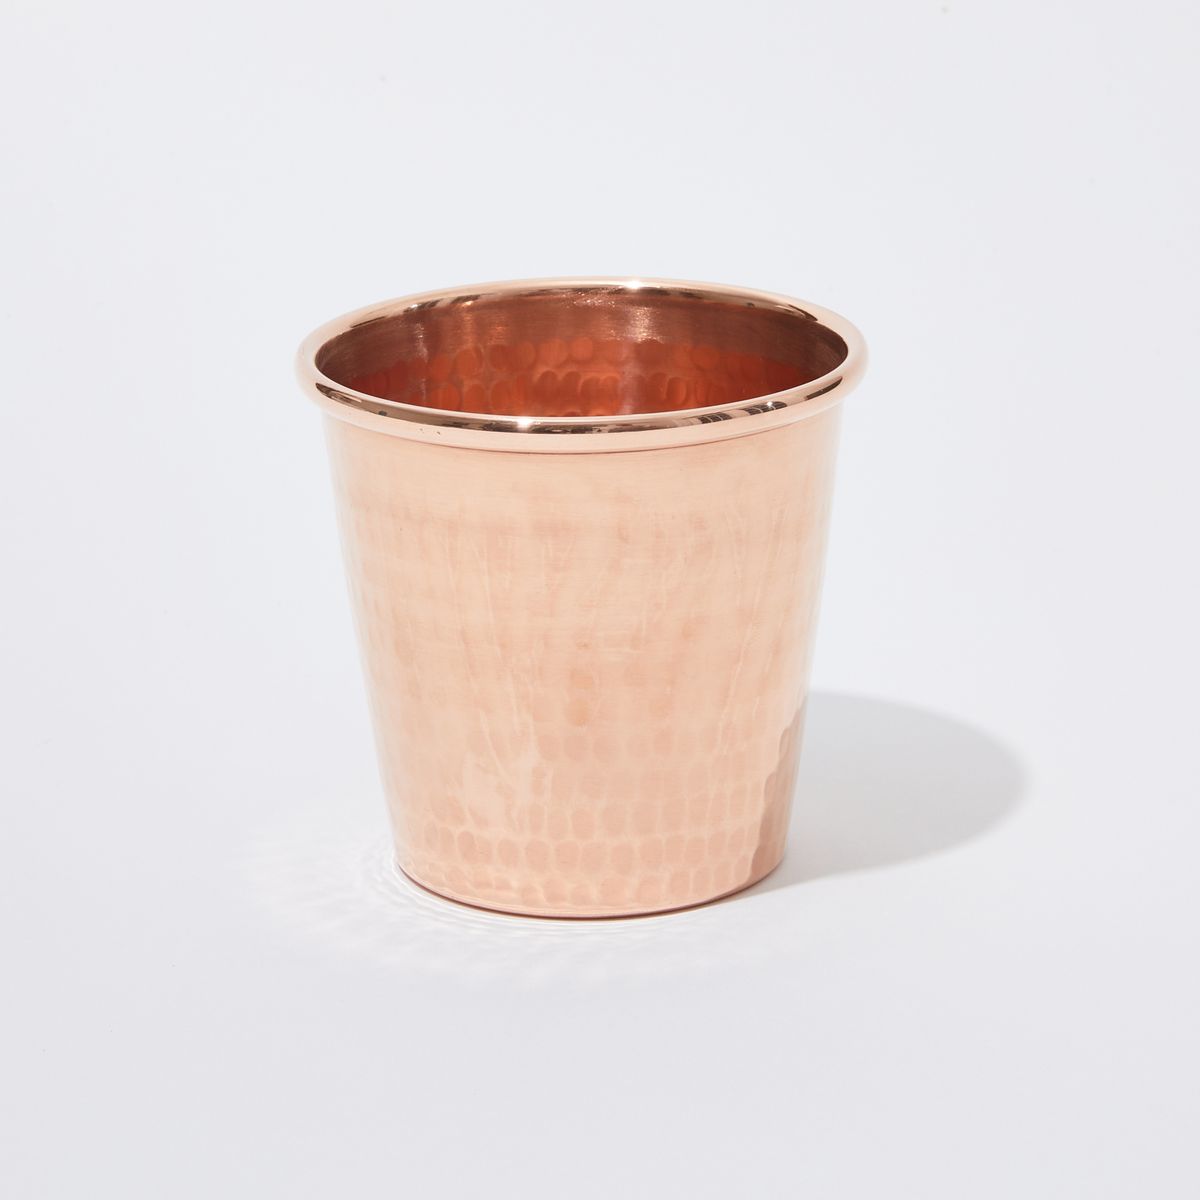 a copper cup